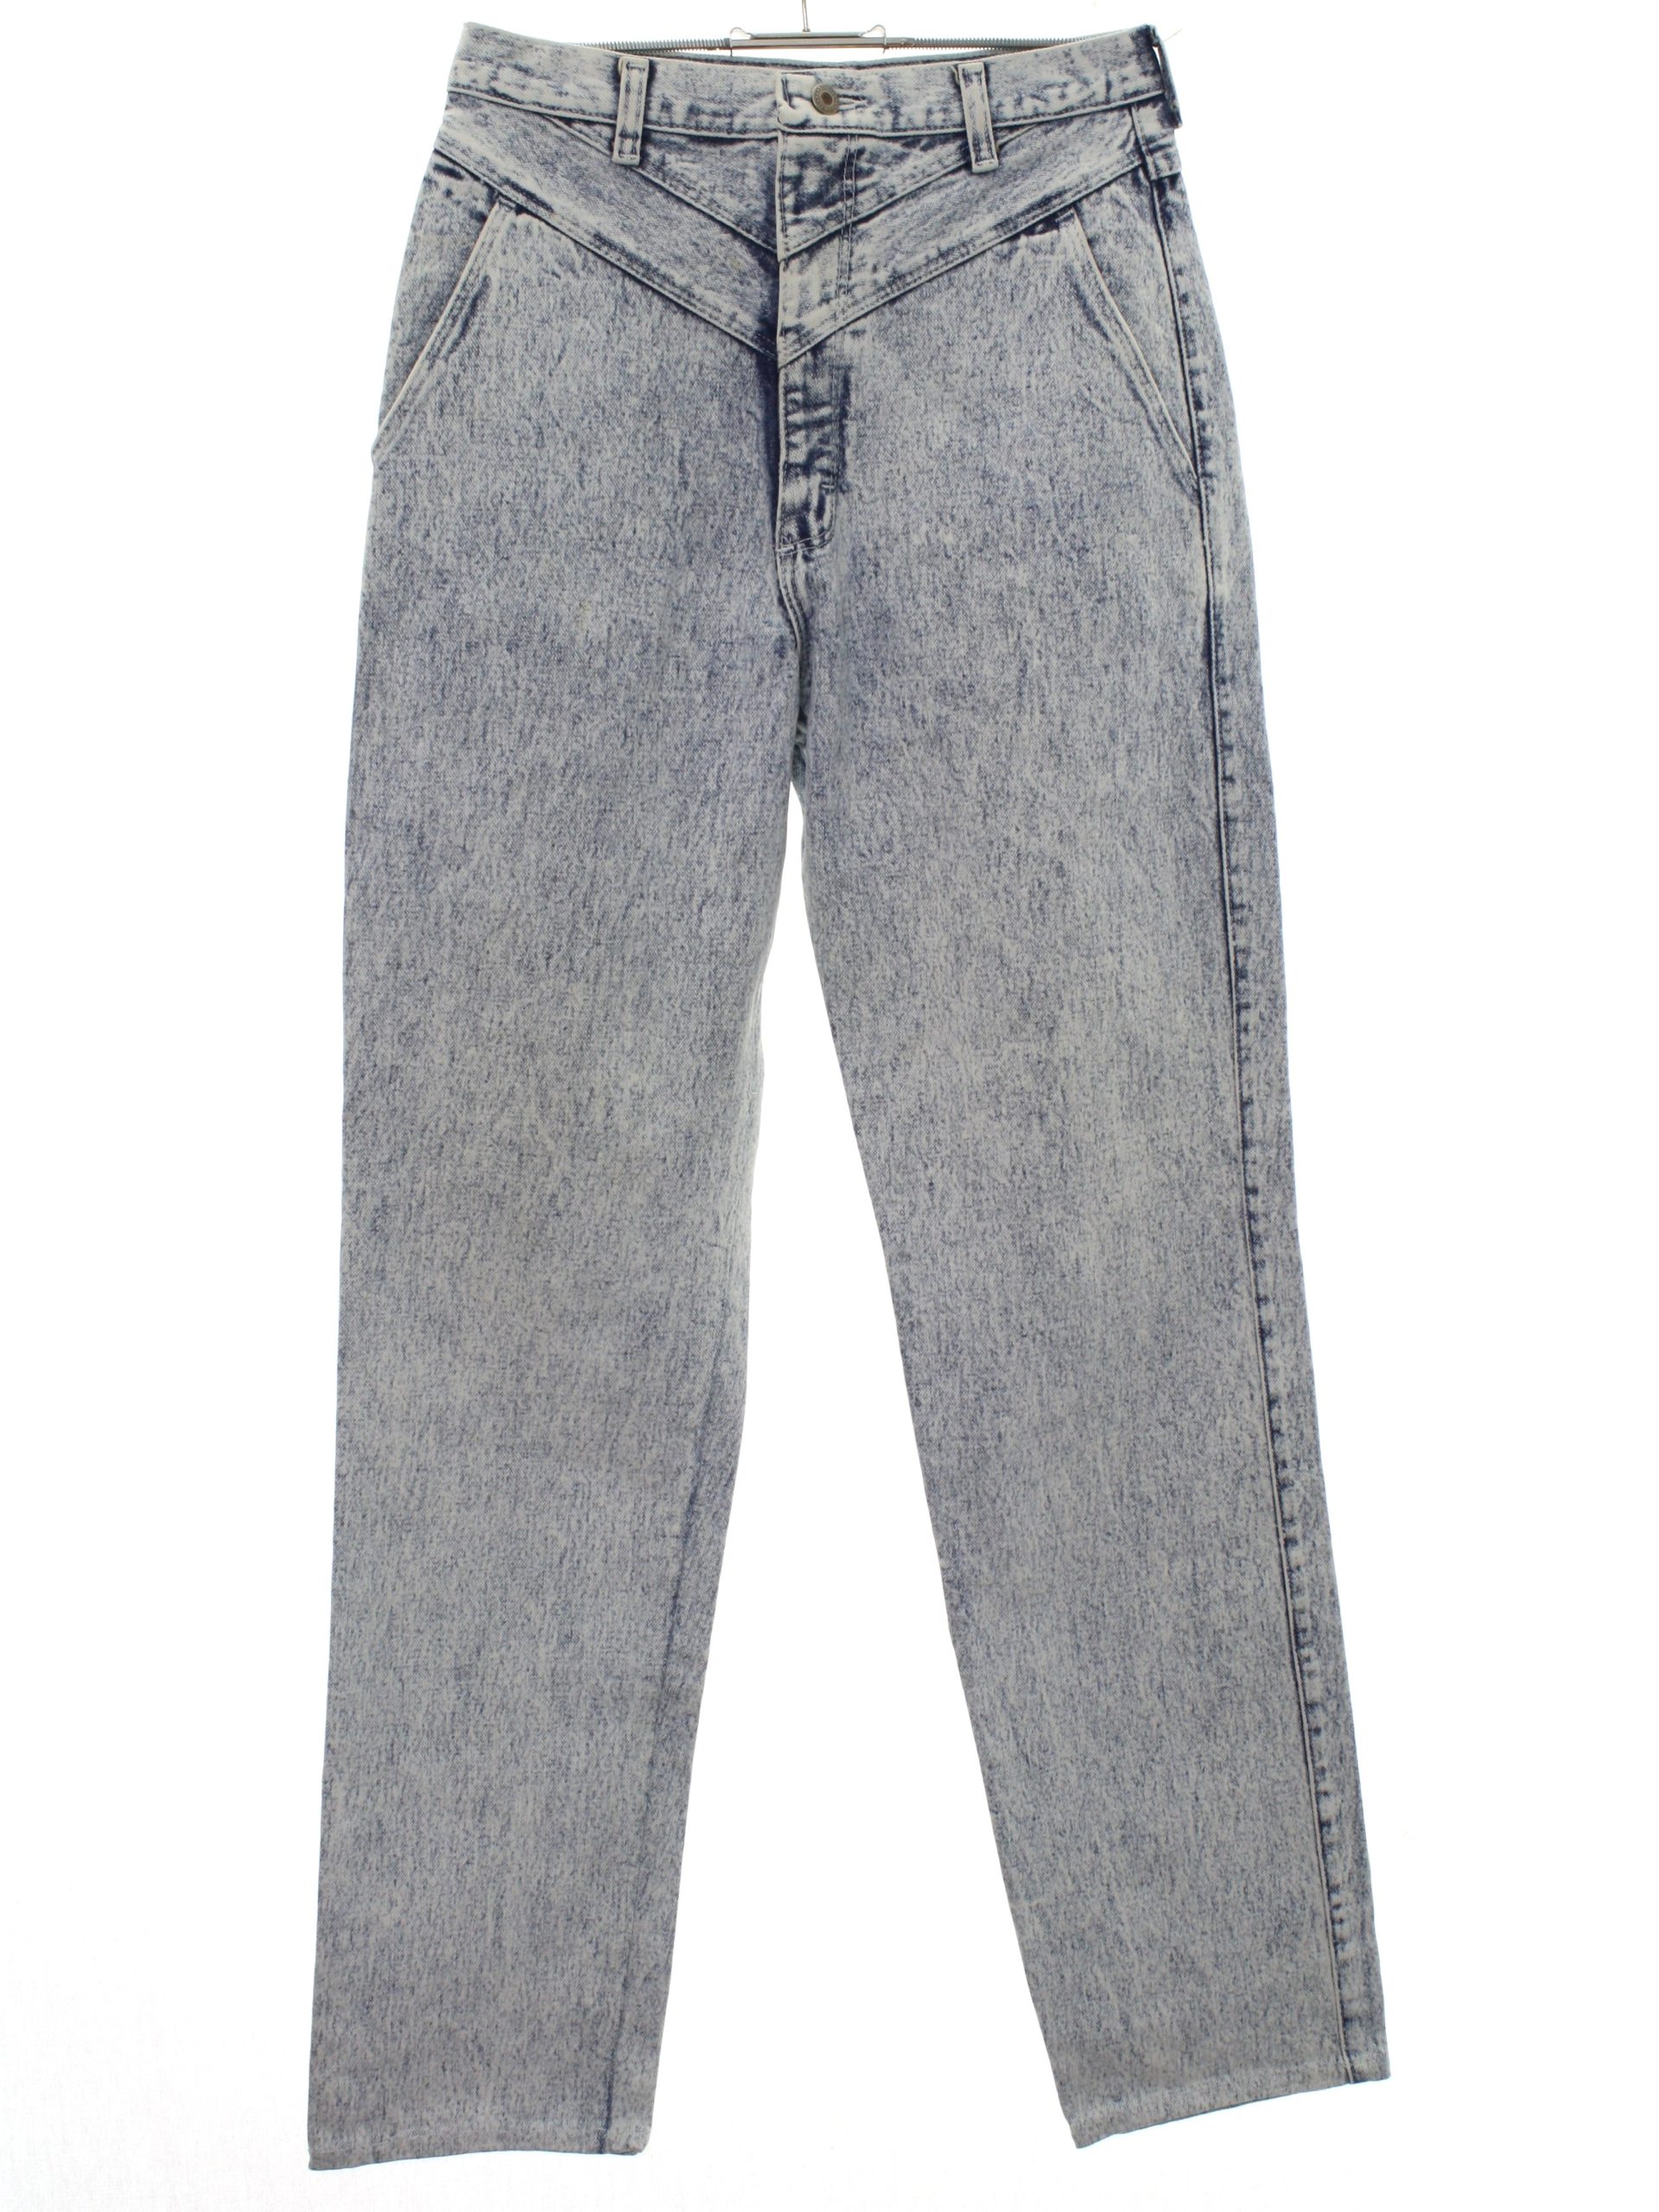 silverlake jeans